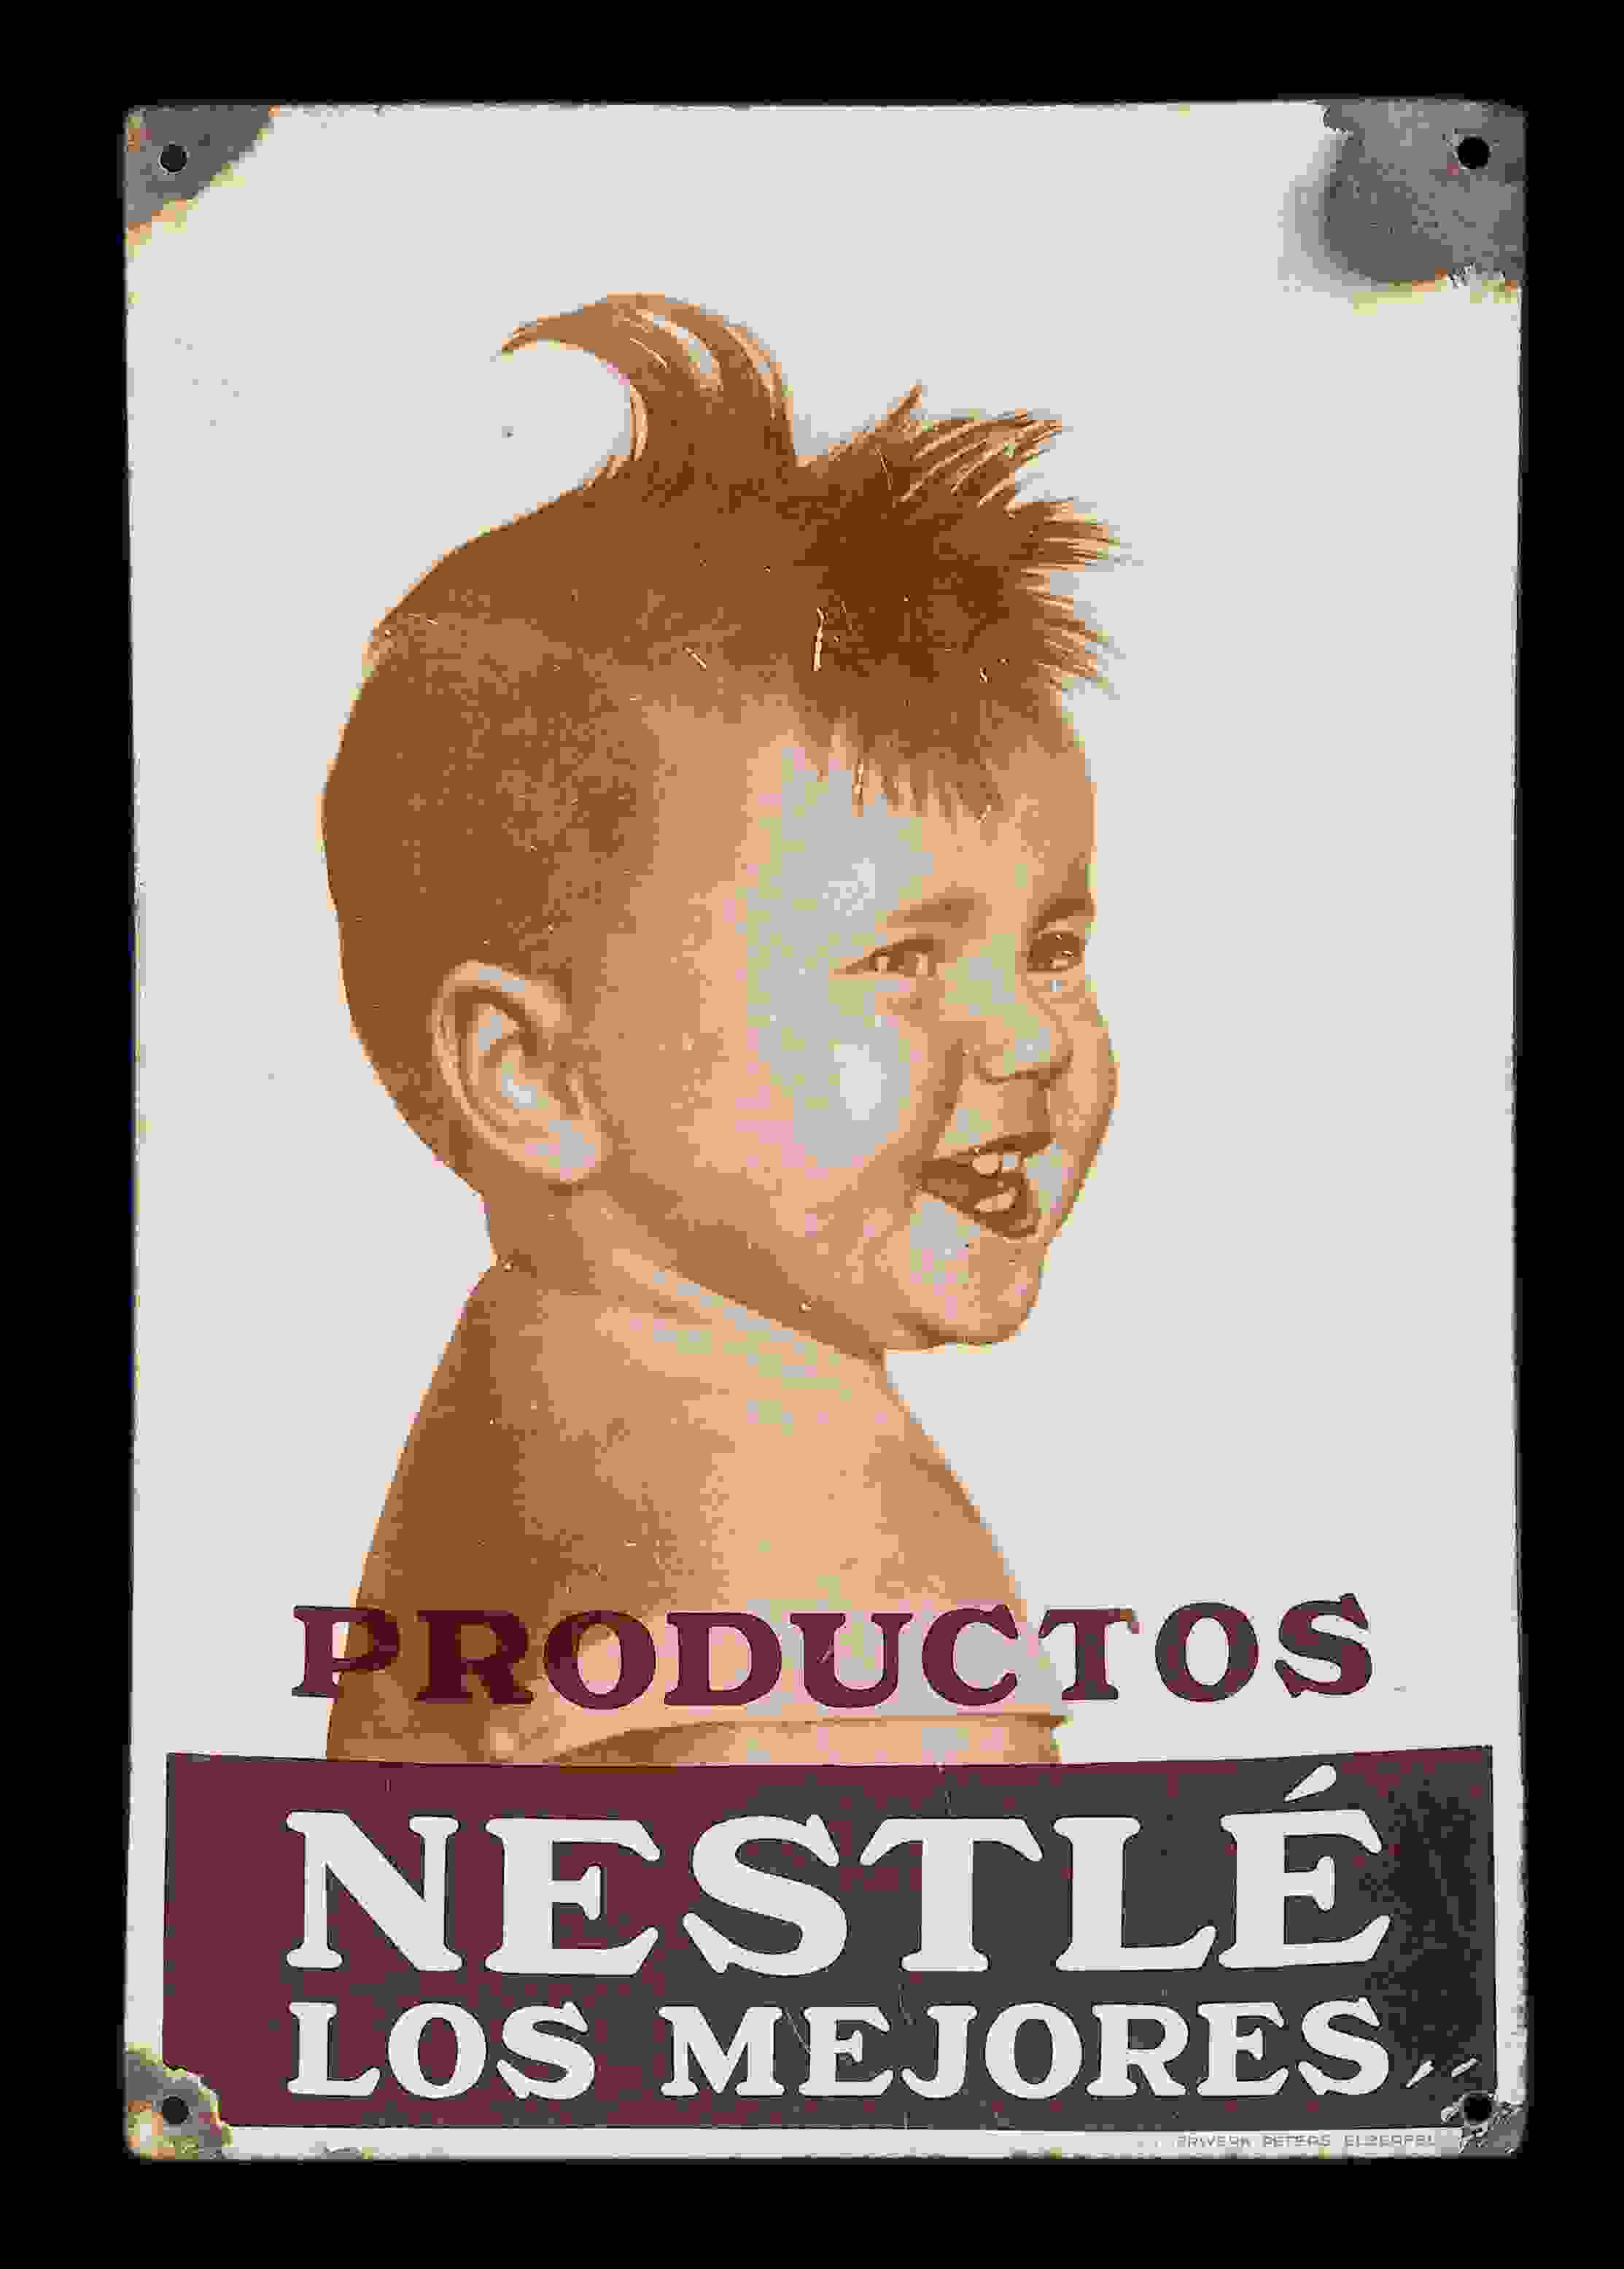 Nestlé Los Mejores 